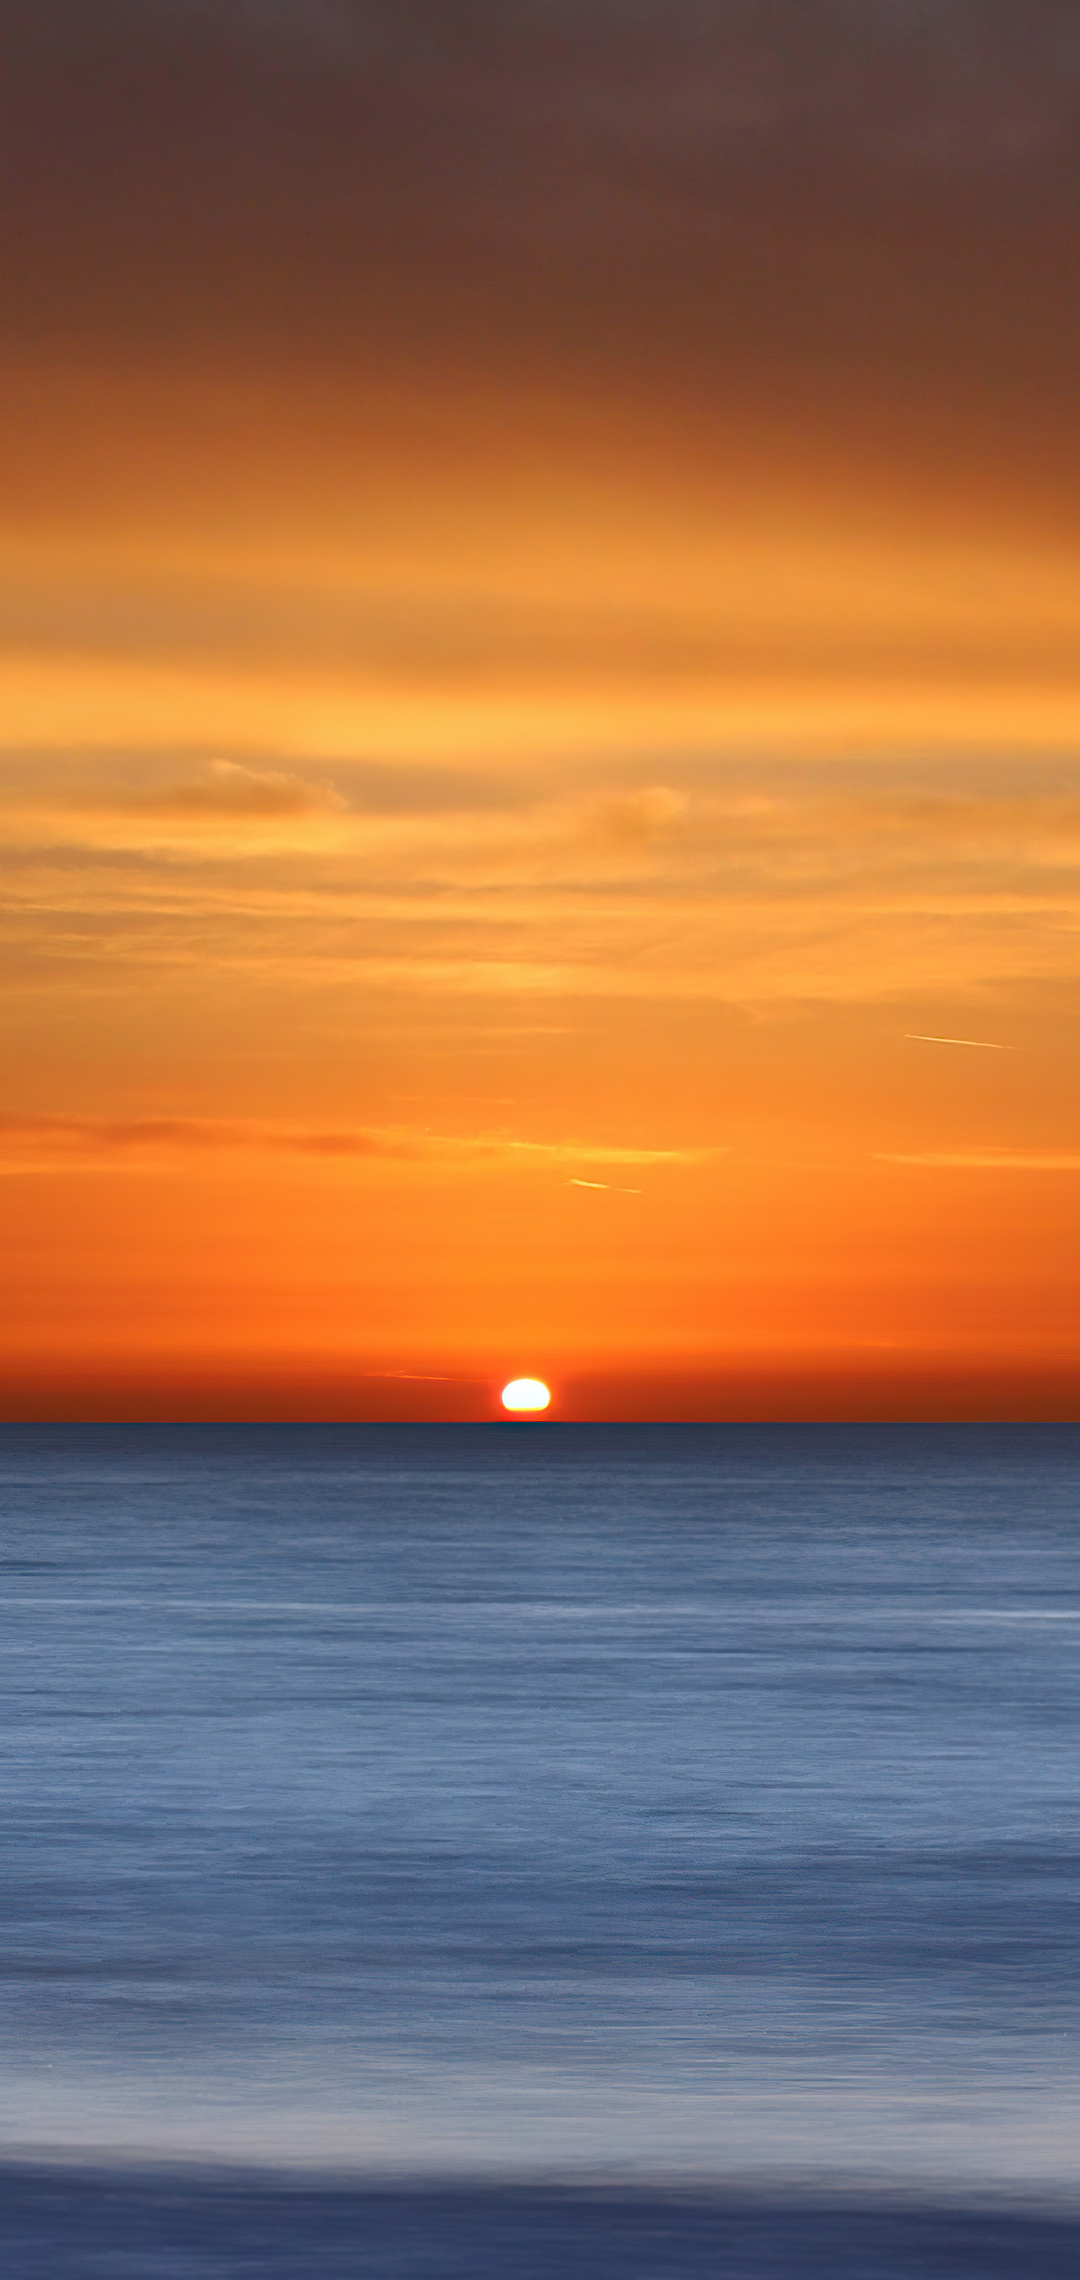 calm-sunset-5k-ig.jpg